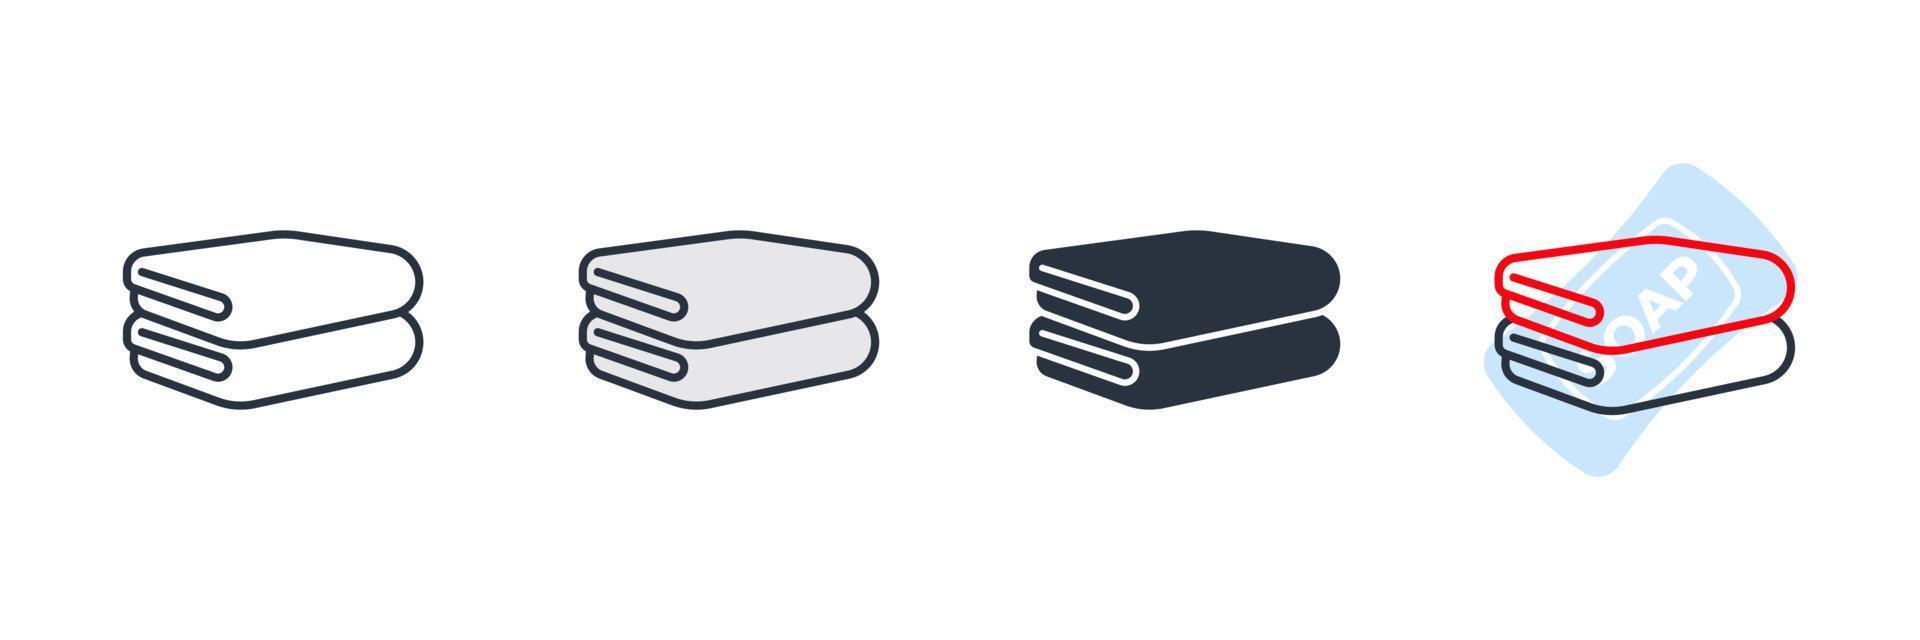 serviette icône logo illustration vectorielle. modèle de symbole de serviettes pliées pour la collection de conception graphique et web vecteur